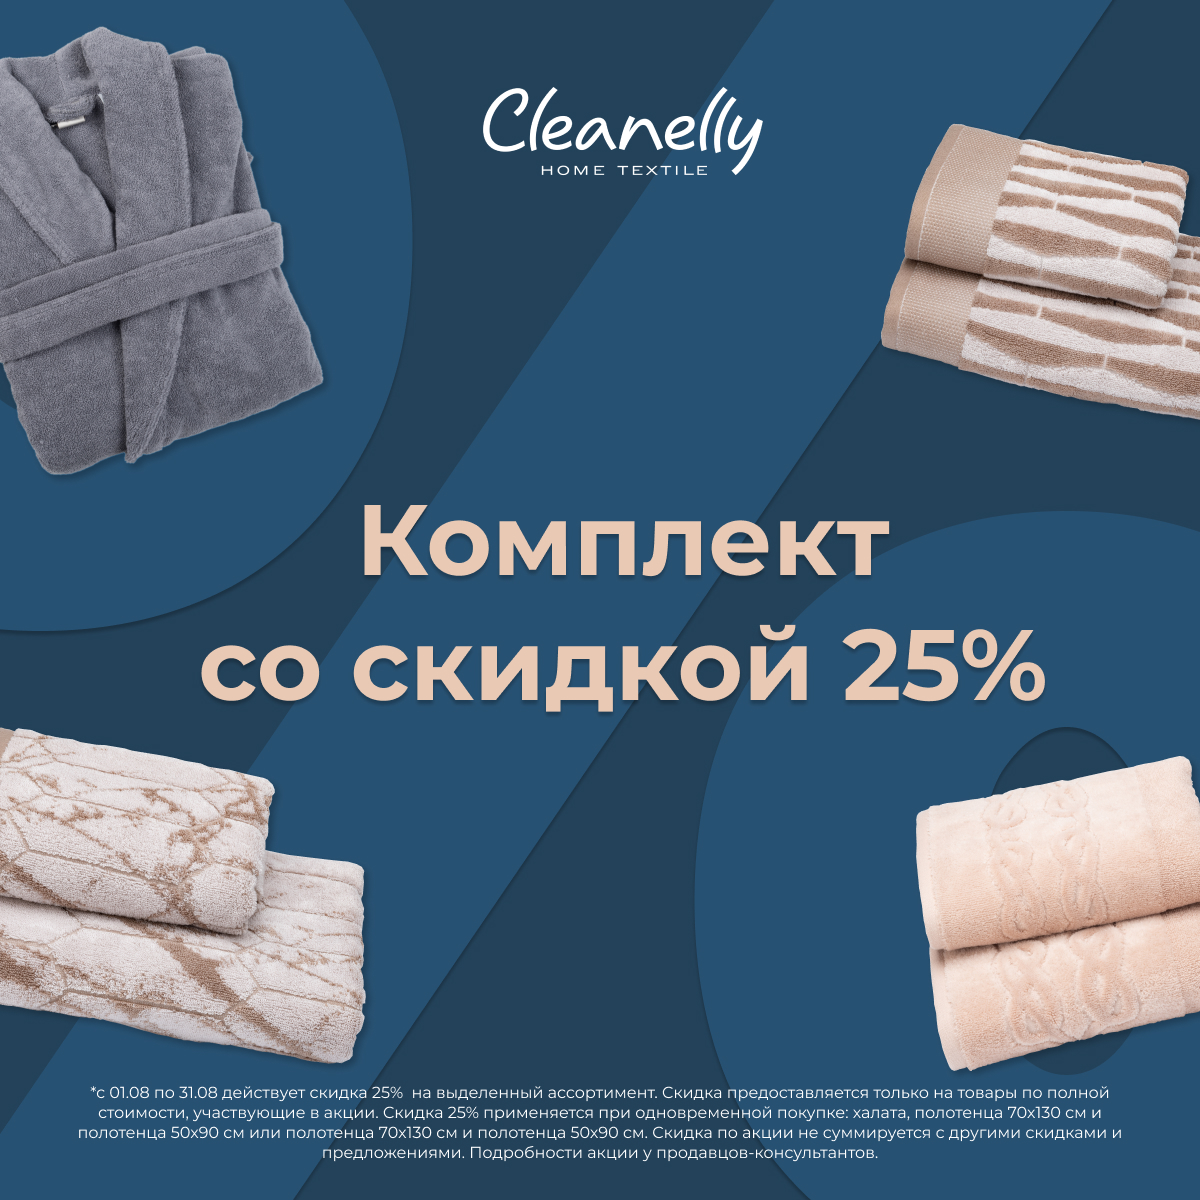 Нежность и выгода в комплекте: -25% на комплекты Cleanelly!